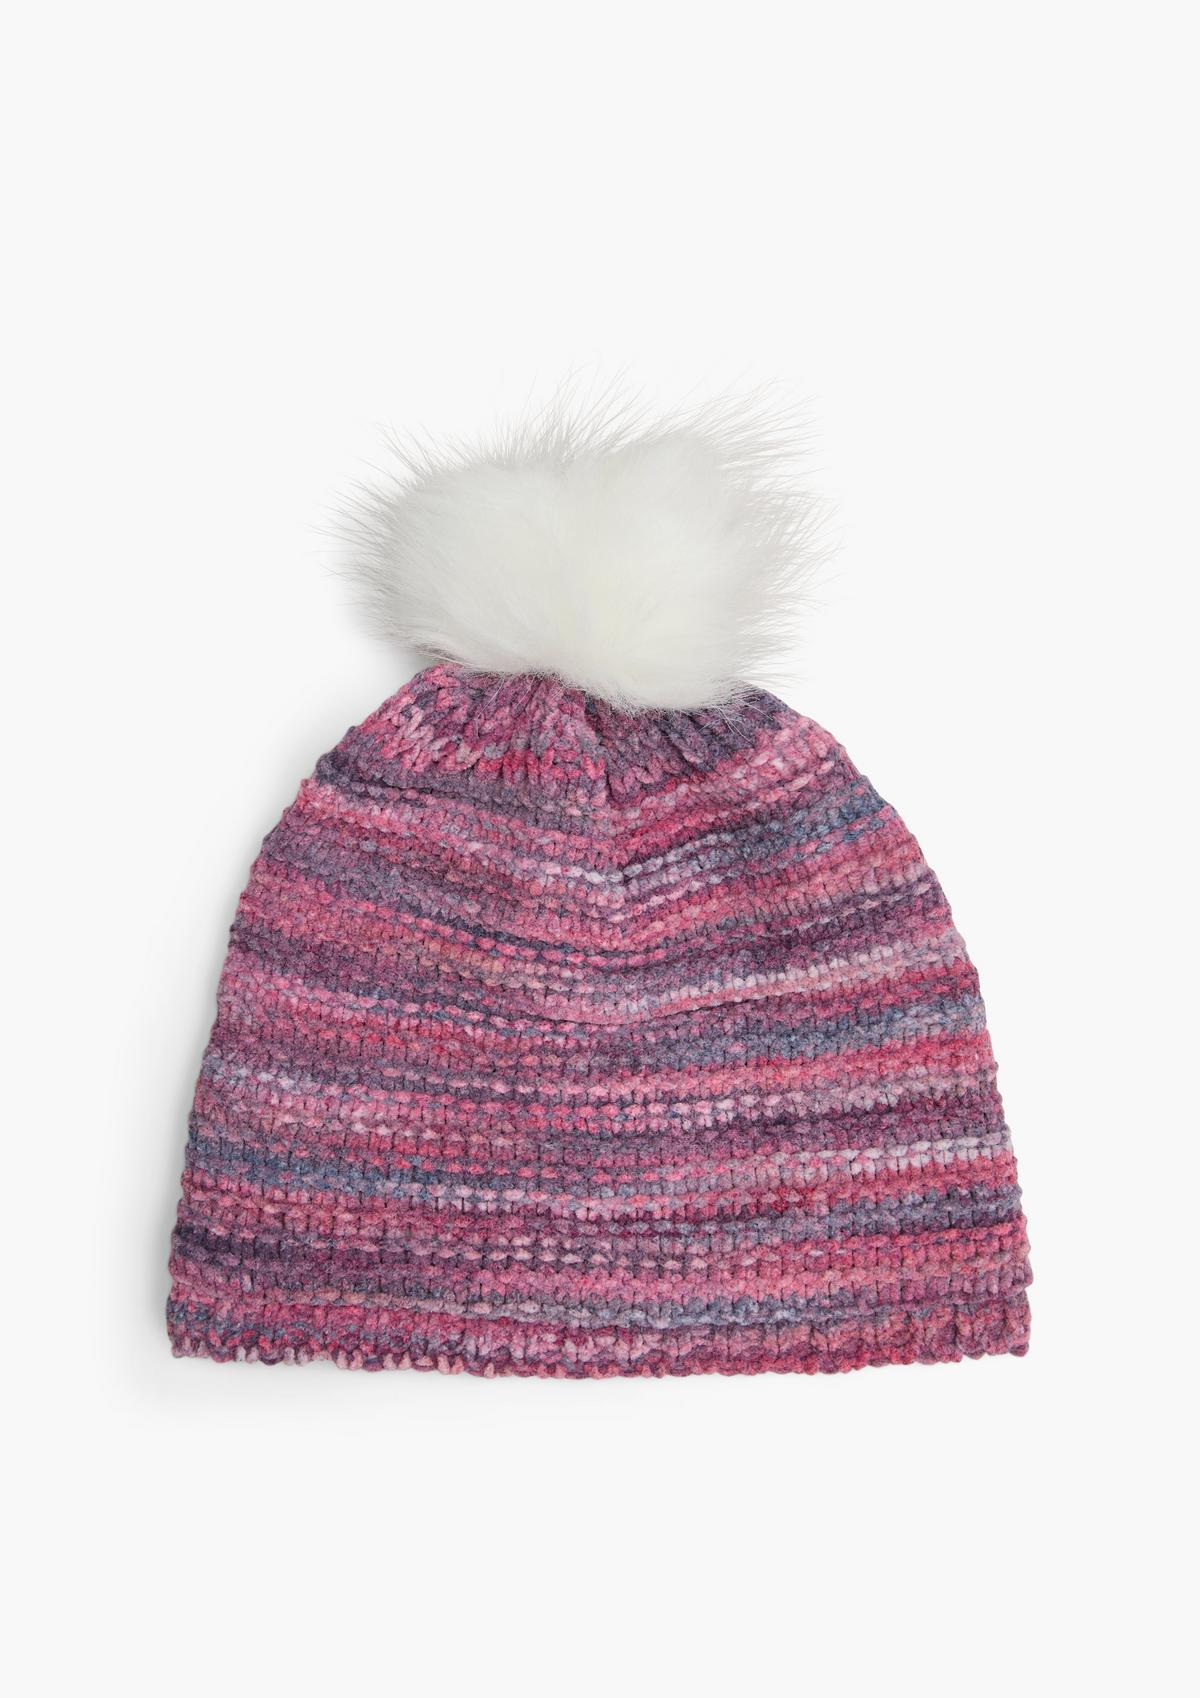 s.Oliver Pompom hat with a knit pattern